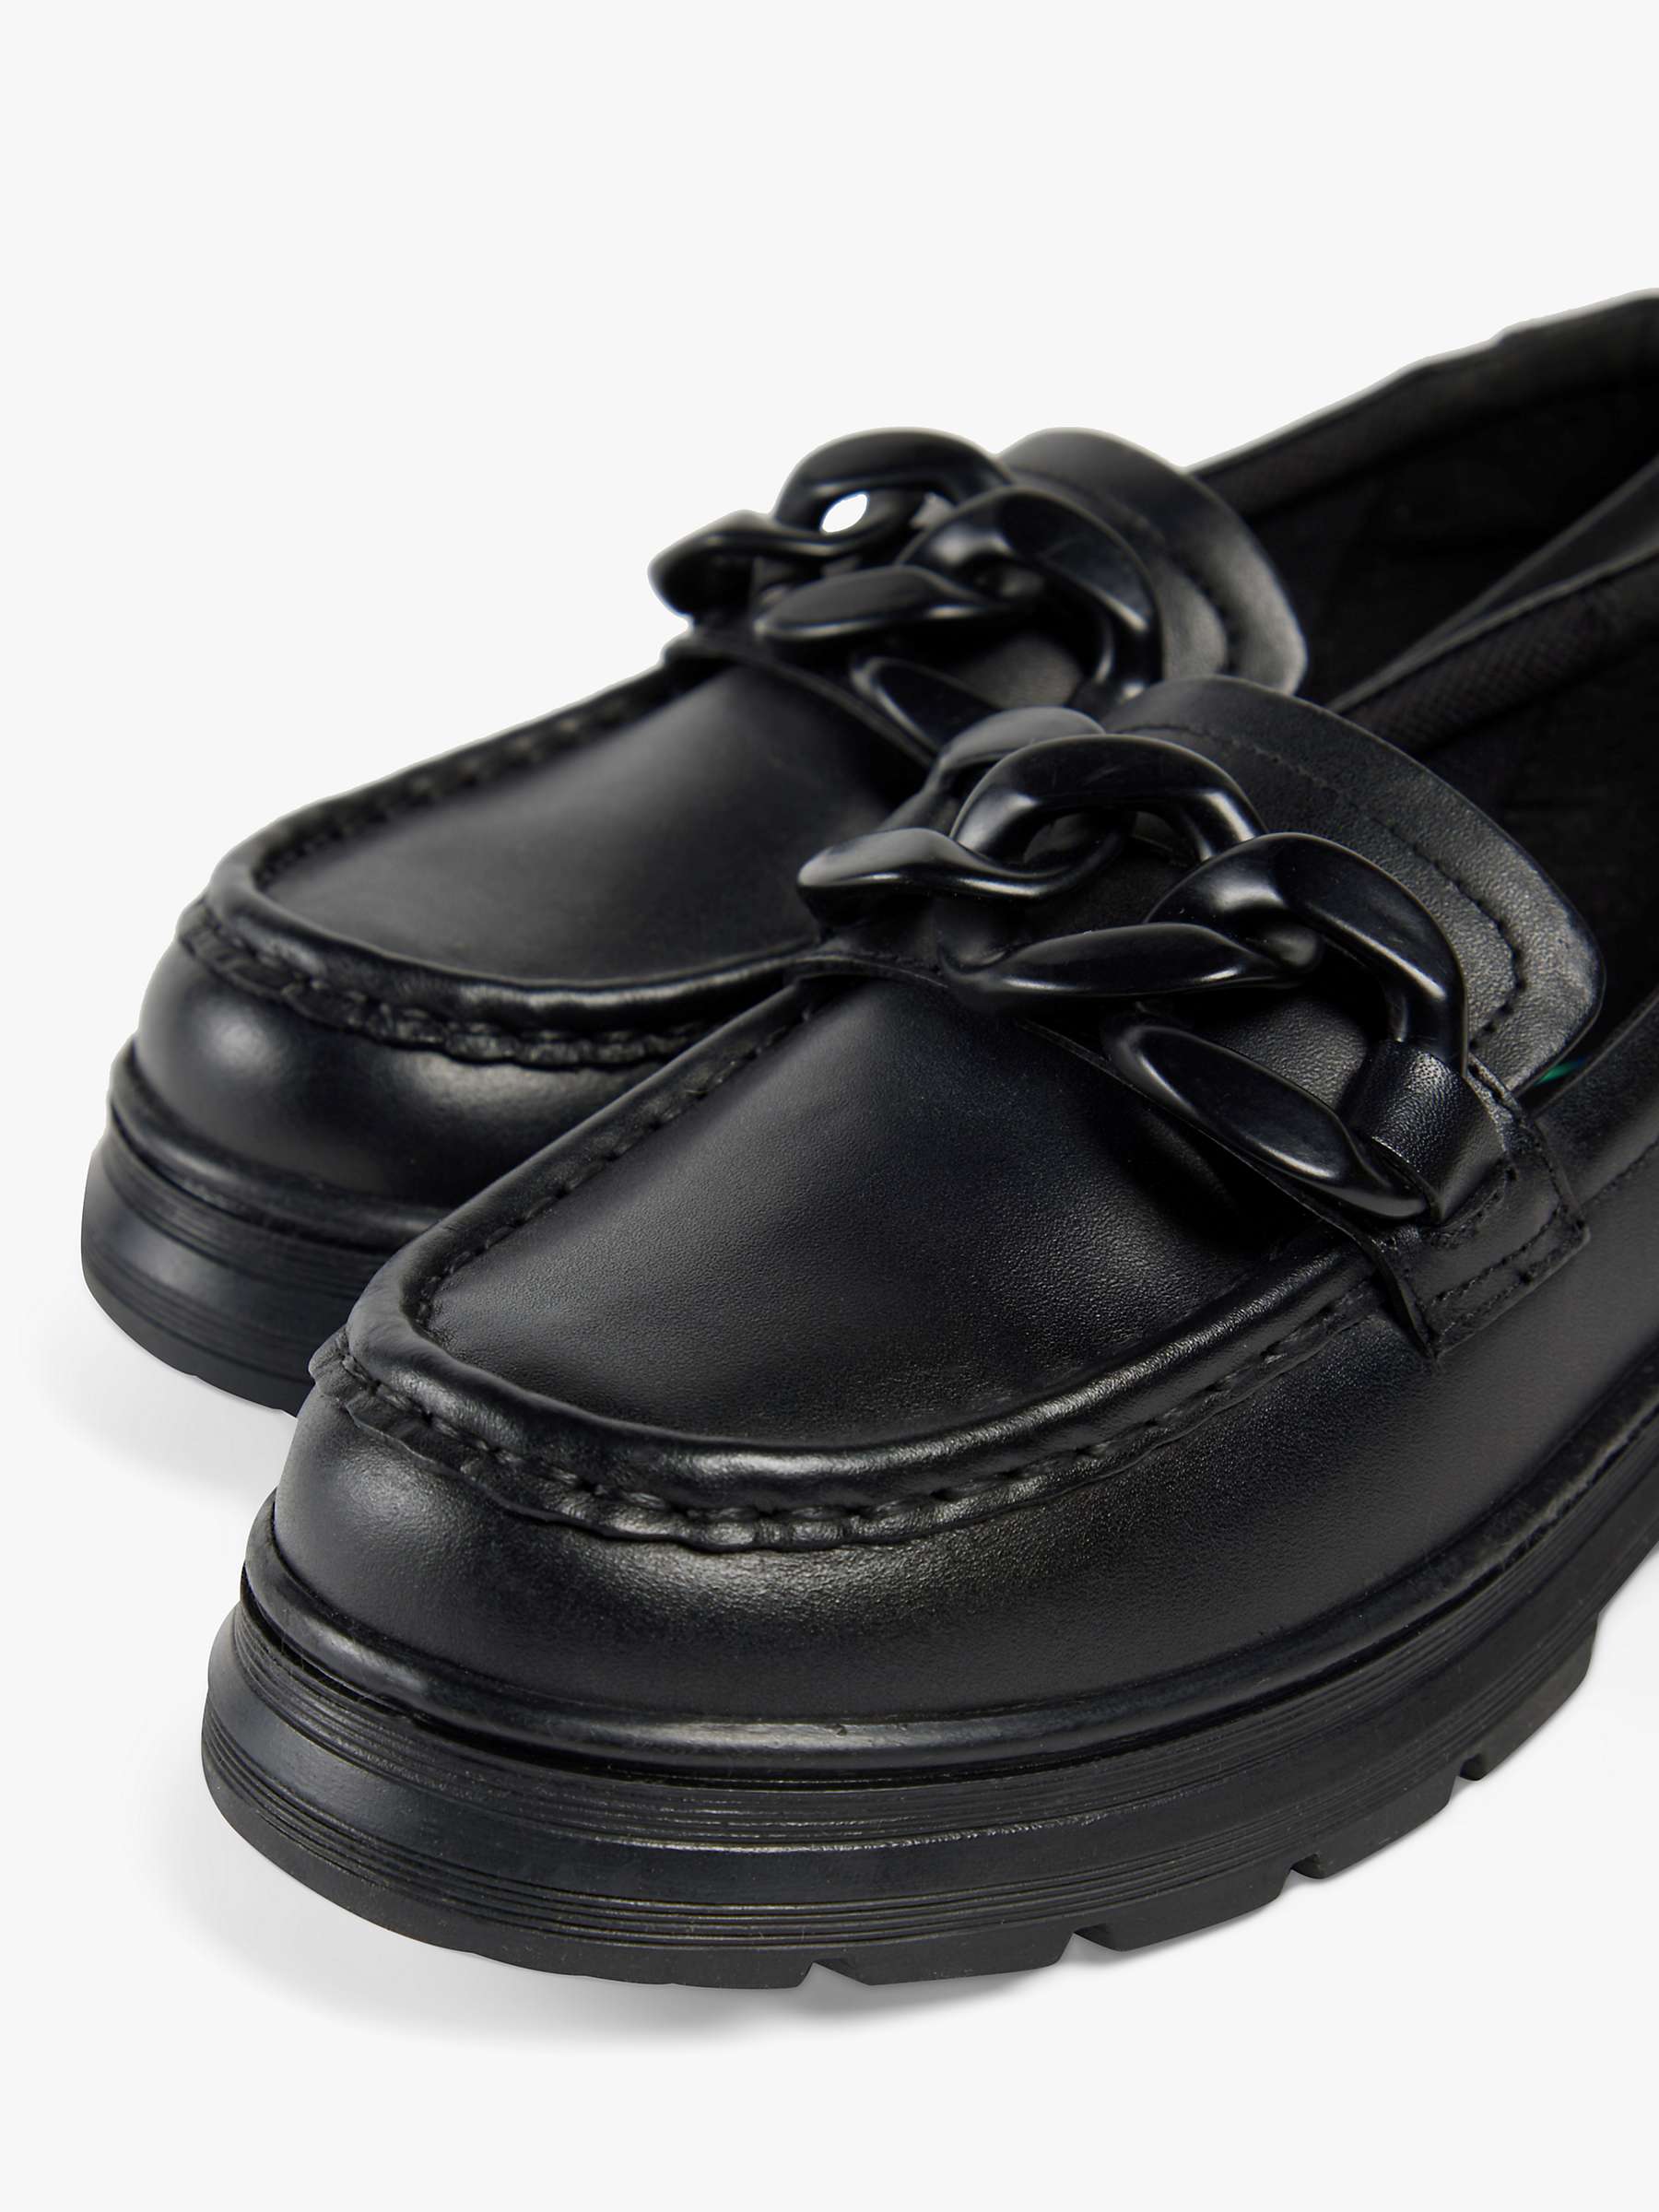 Buy Pod Kids' Mina Loafer Leather School Shoes, Black Online at johnlewis.com